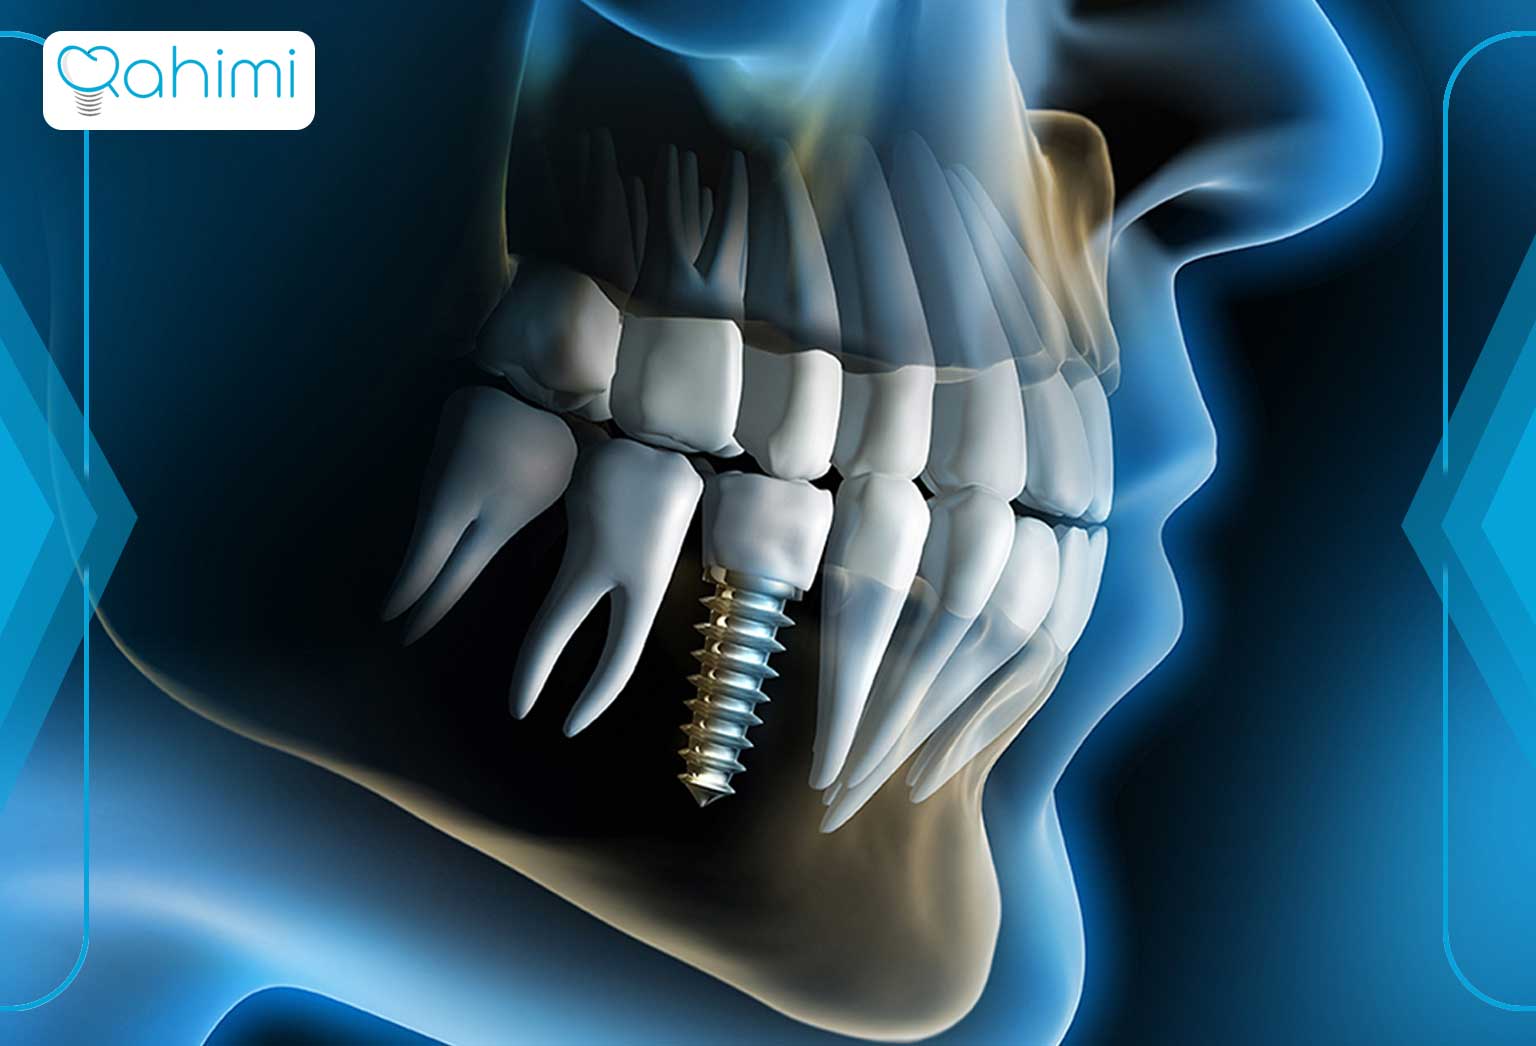 ساختار ایمپلنت دندان